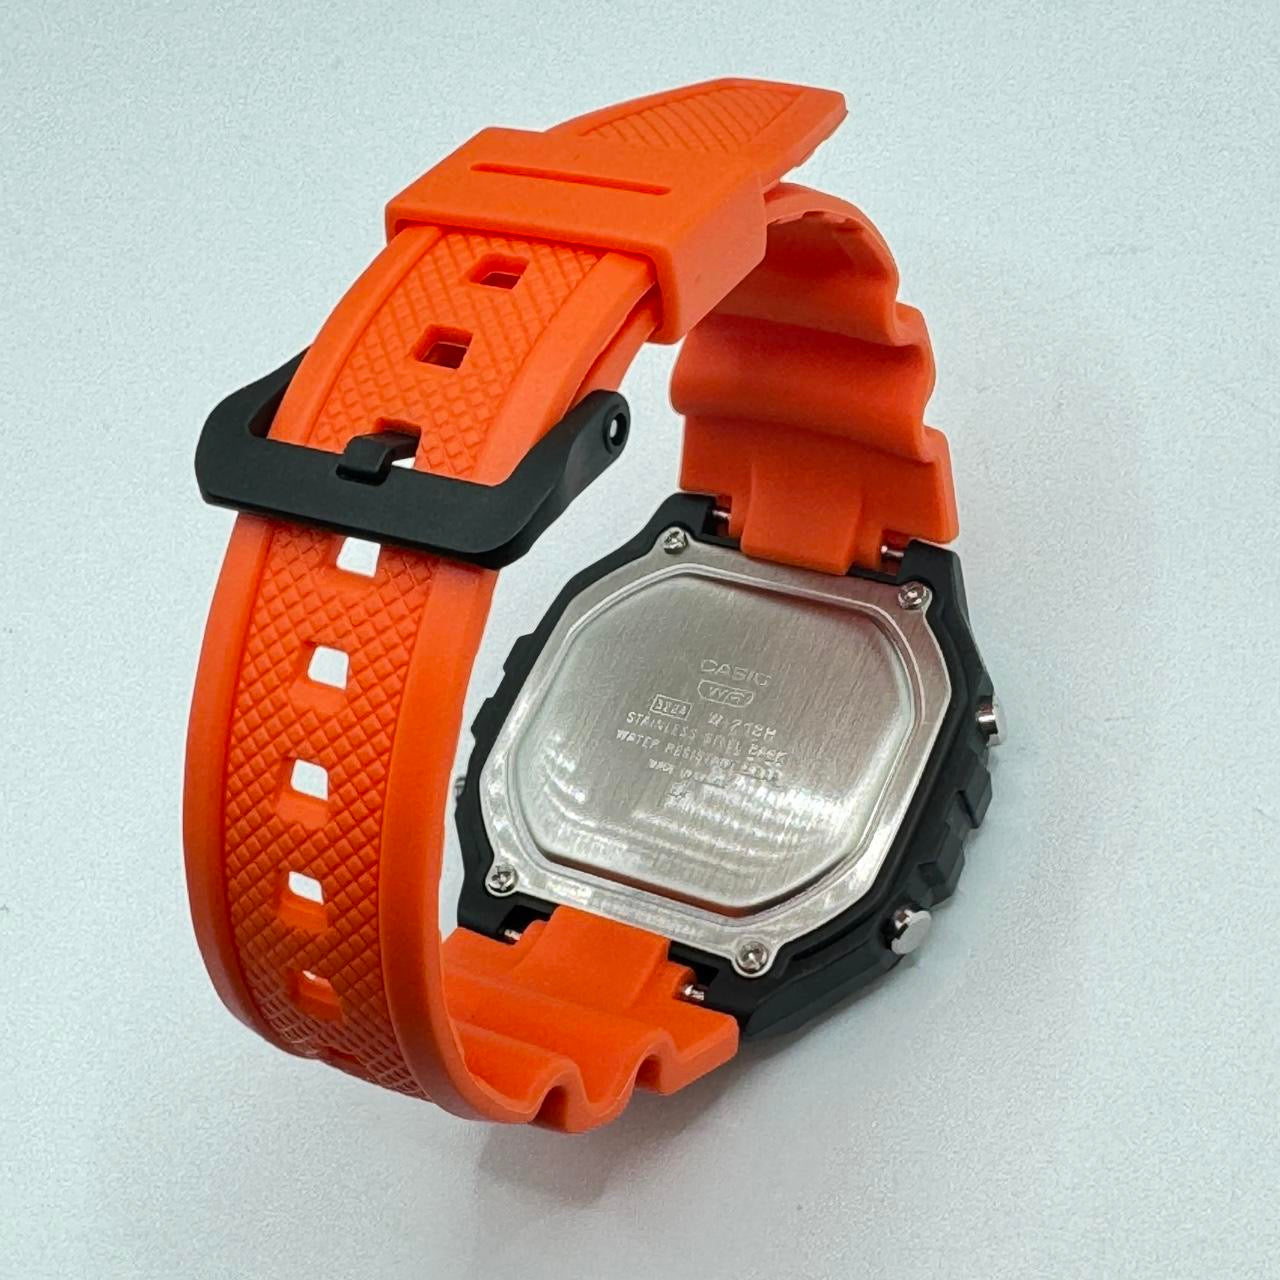 Casio Watch  &nbsp;For Men or Young Teen Watch&nbsp;  Fits up to 9 inches Long&nbsp;  Digital Movement&nbsp;  Light , Calendar , Timer Stop,&nbsp;&nbsp;  Color light red&nbsp;  New ITem&nbsp;  Rubber Band 9 inches long&nbsp;  40 mm Diameter&nbsp;